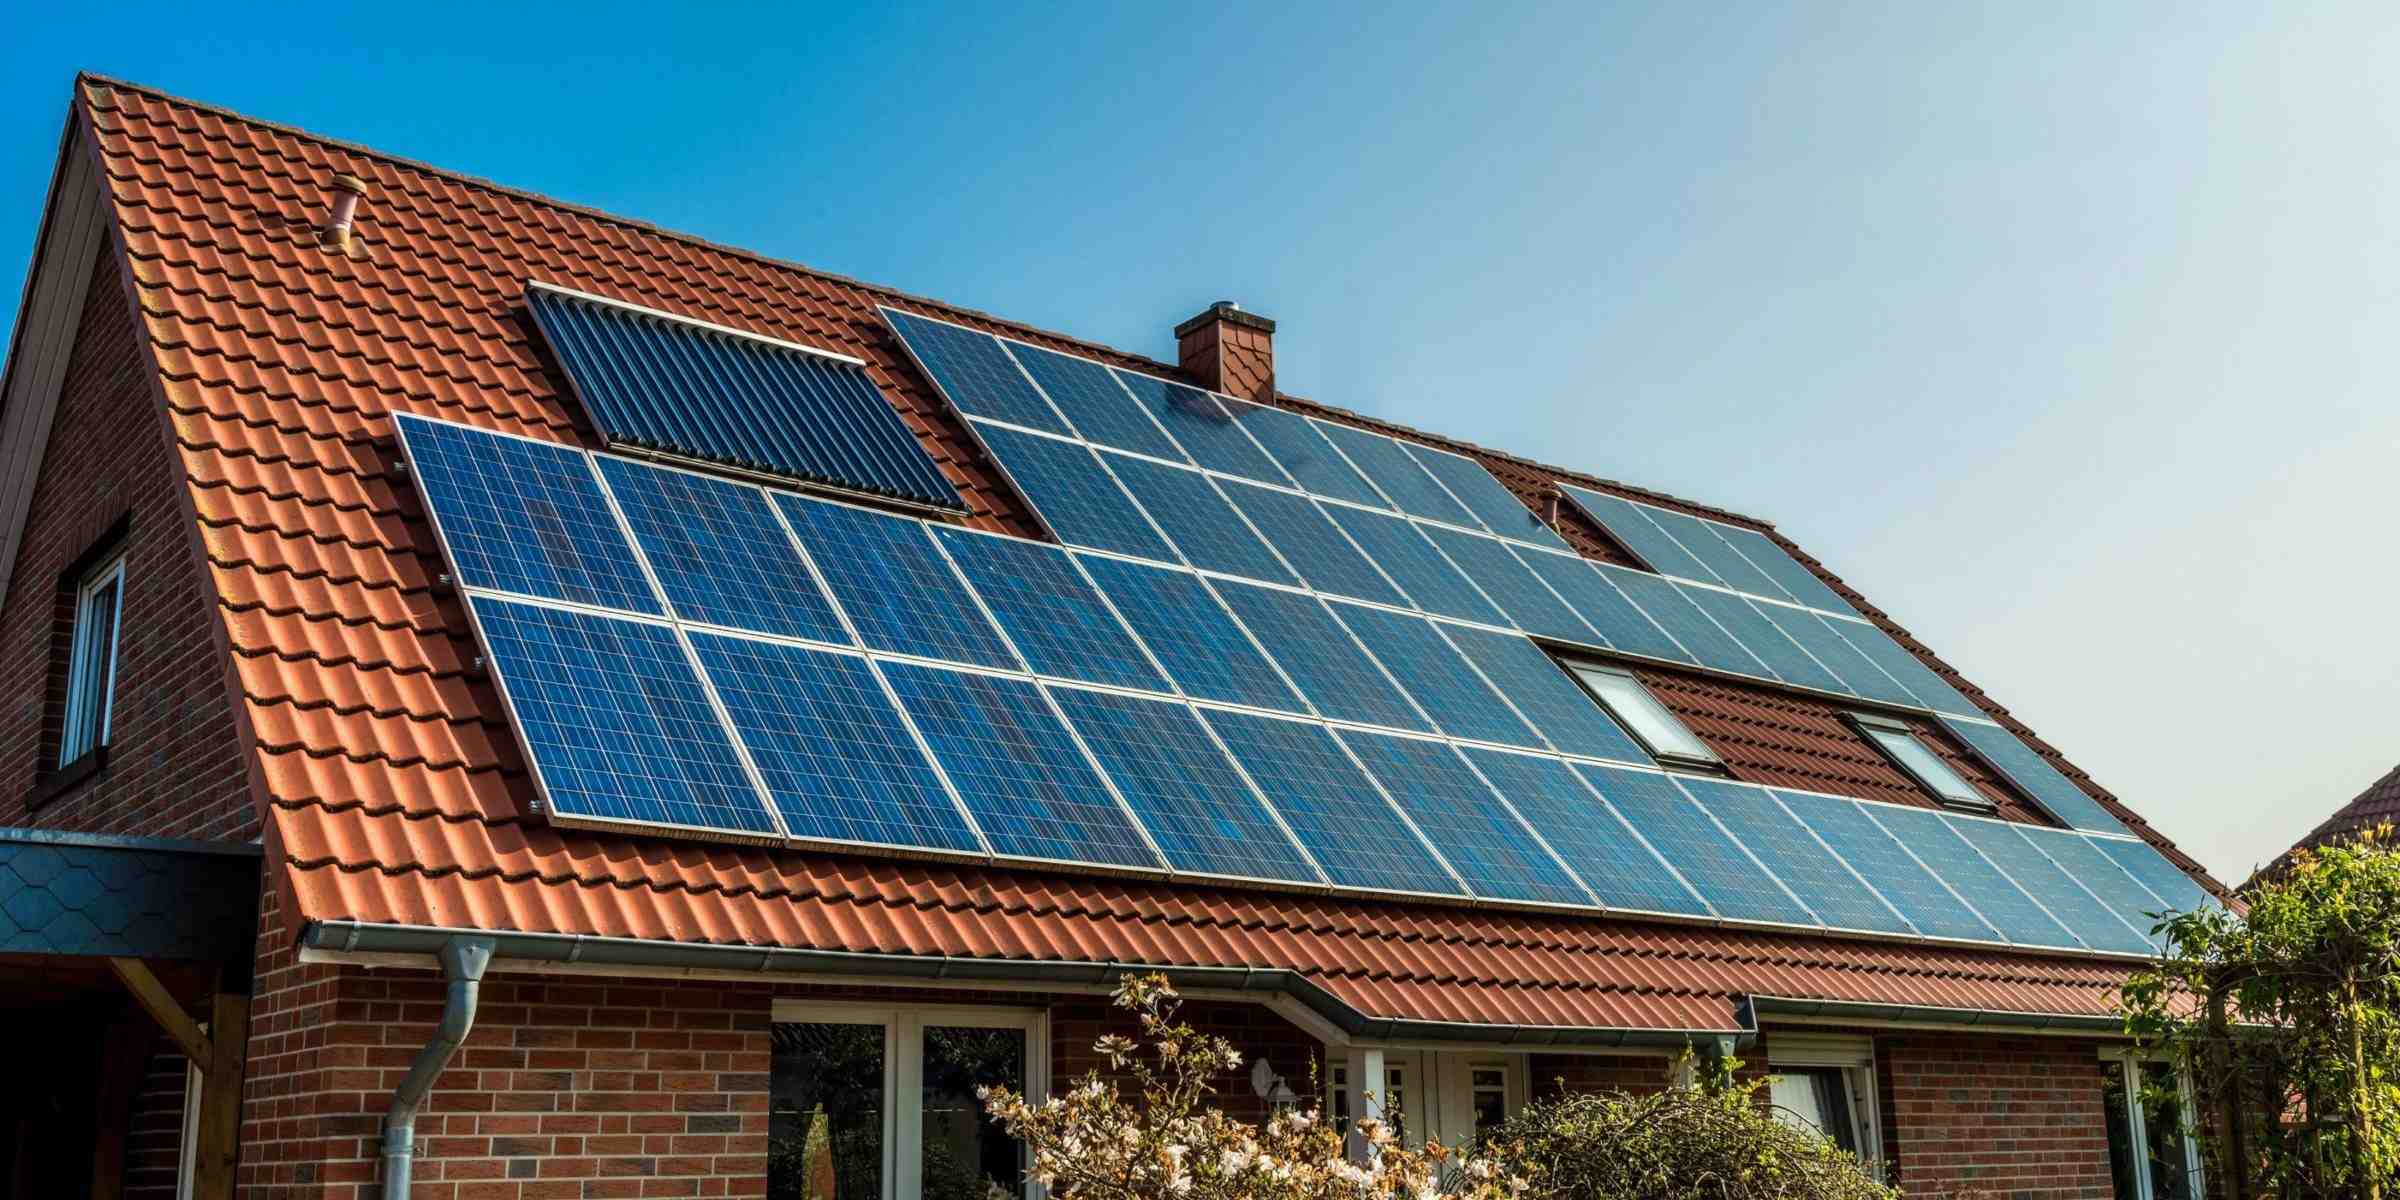 Is sunrun a good solar company?